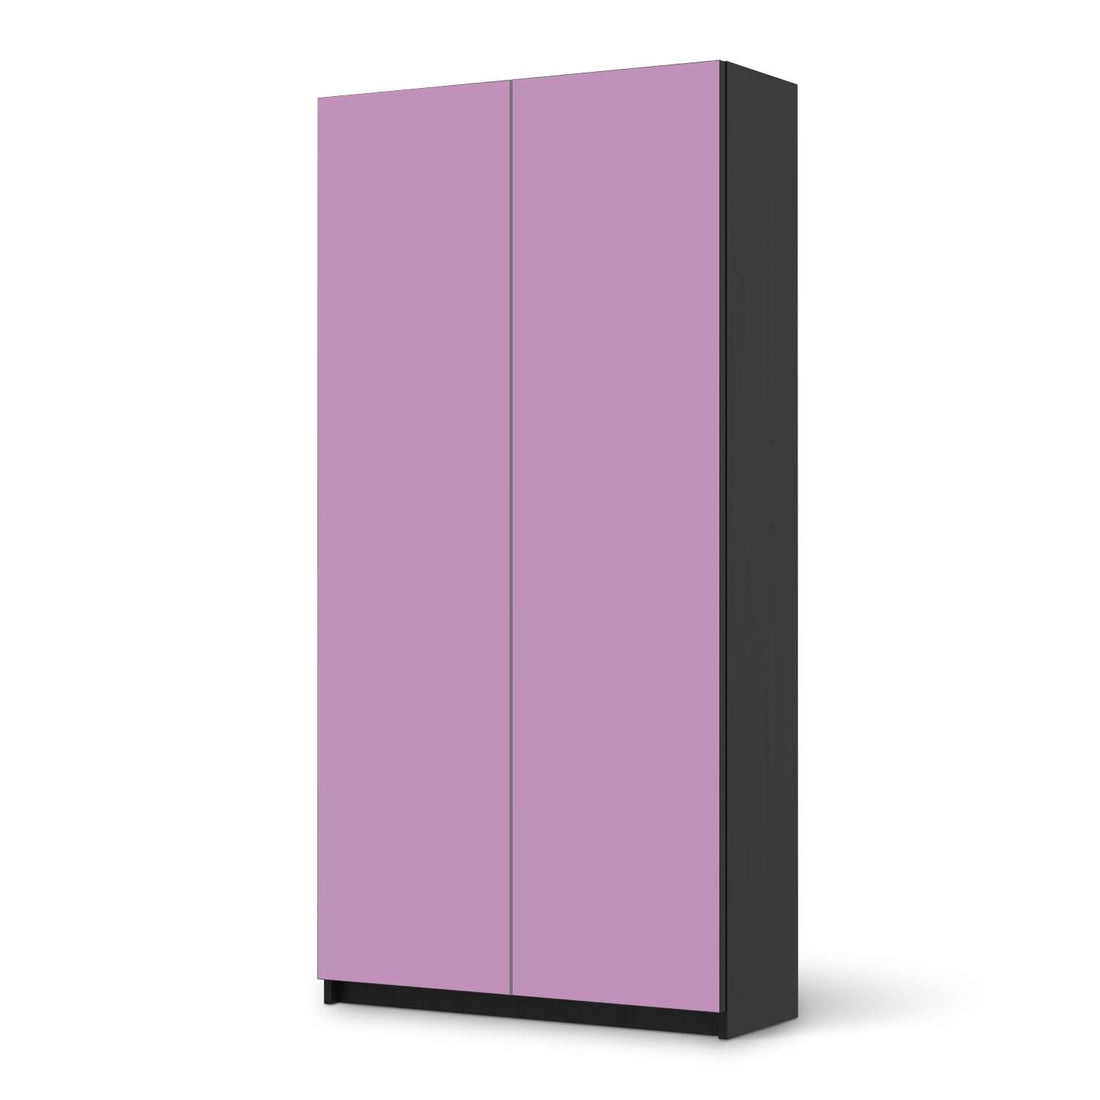 Klebefolie für Möbel Flieder Light - IKEA Pax Schrank 201 cm Höhe - 2 Türen - schwarz